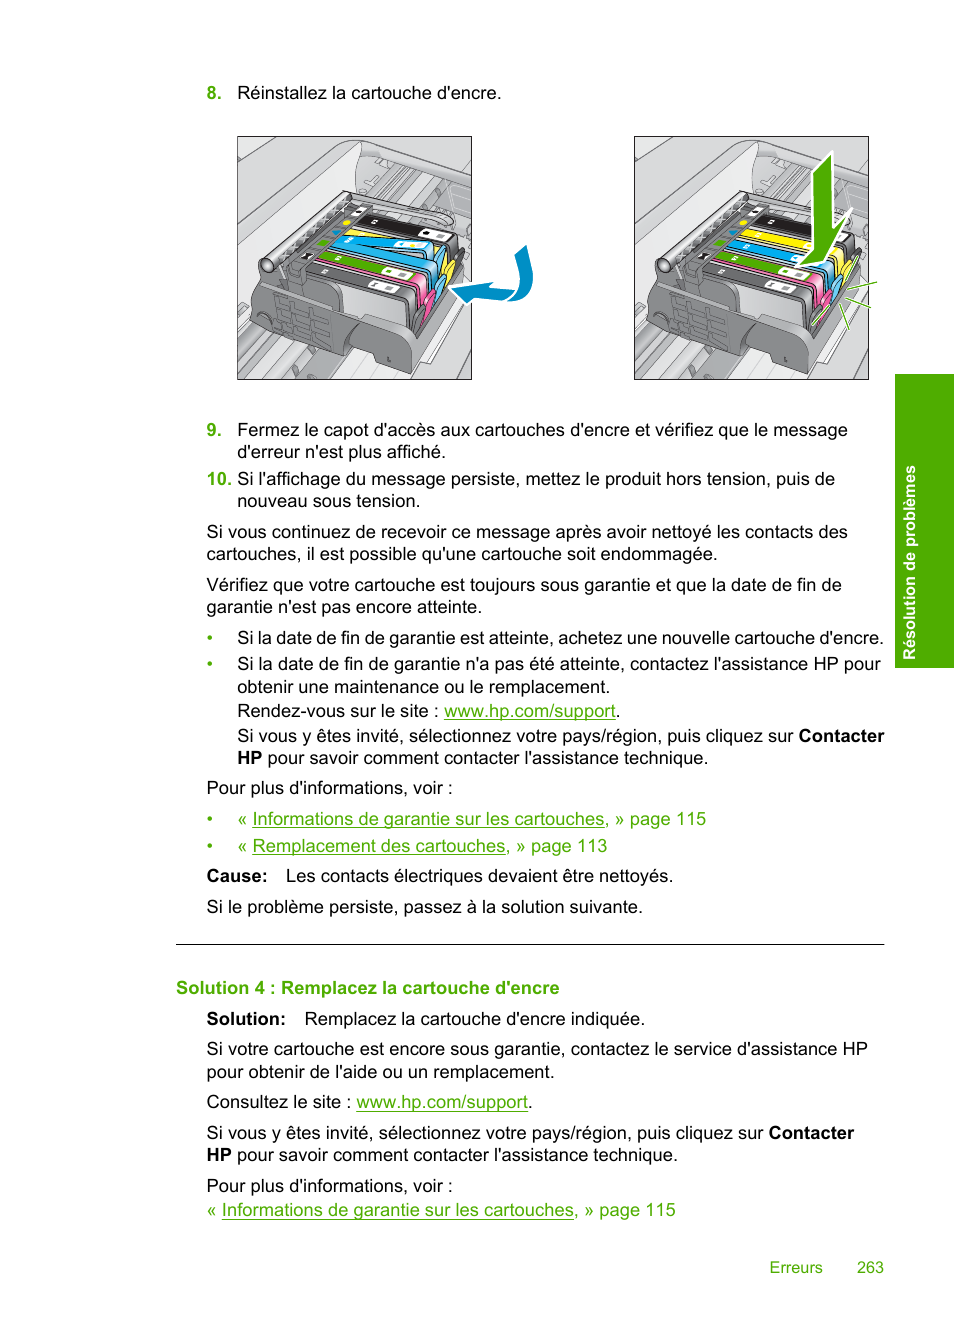 Solution 4 : remplacez la cartouche d'encre | HP Imprimante tout-en-un HP Photosmart Premium C309a Manuel d'utilisation | Page 265 / 318